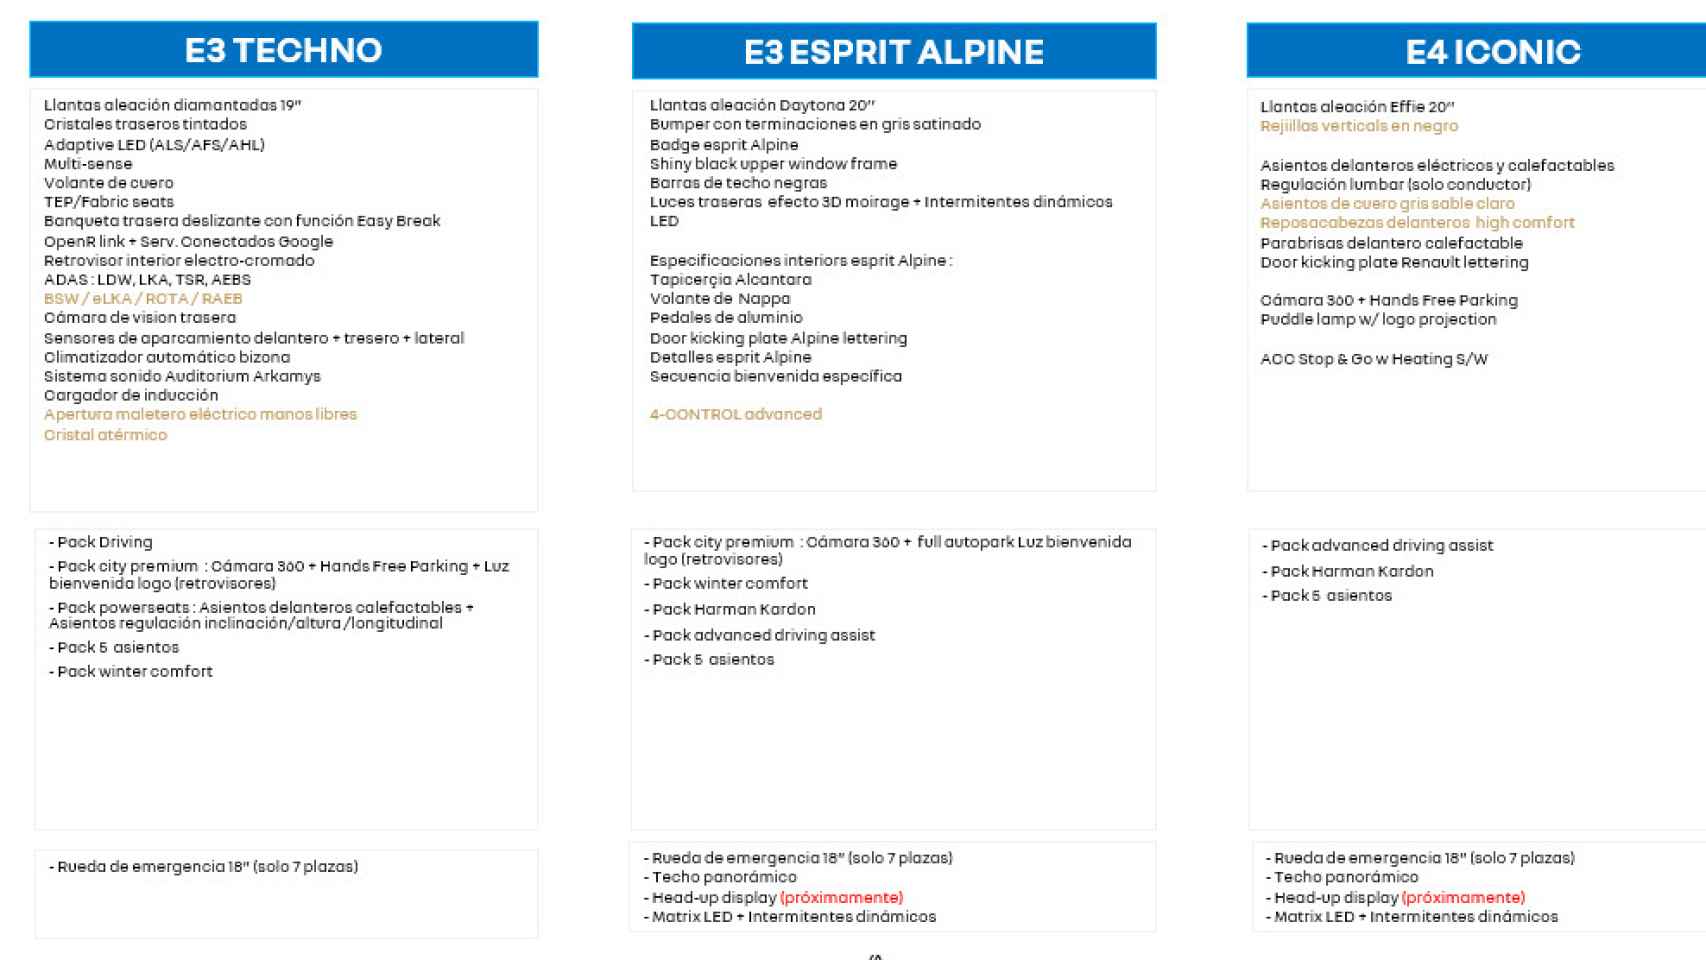 Características del nuevo Renault Espace, que se fabrica en Palencia.